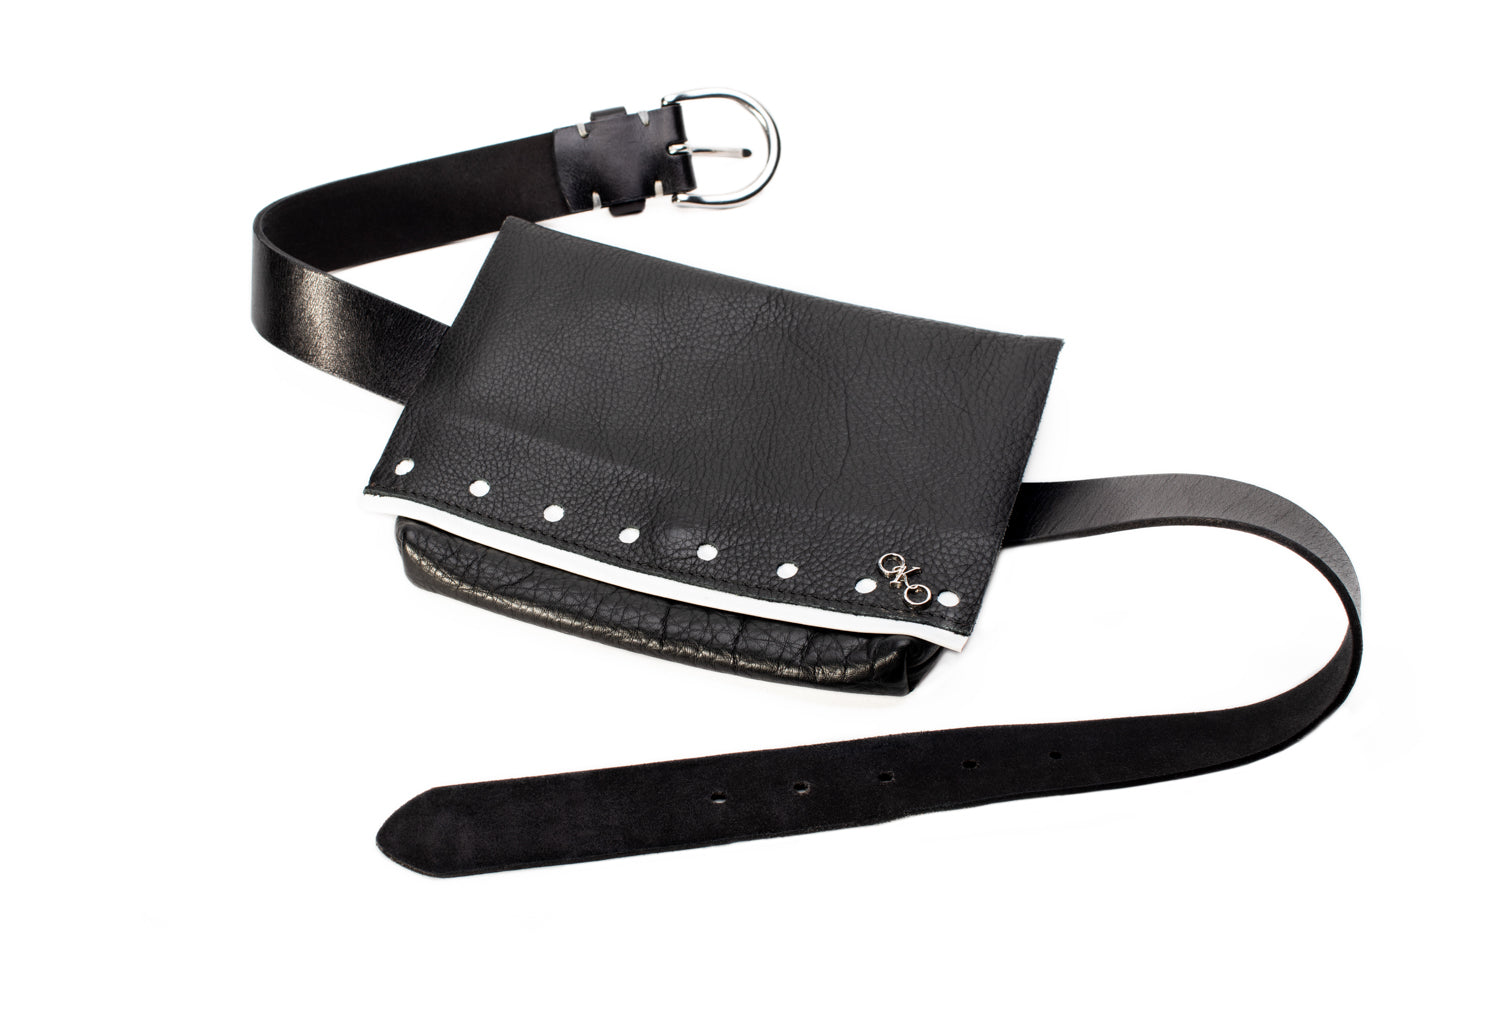 Hipster belt pouch – OKOhandbags